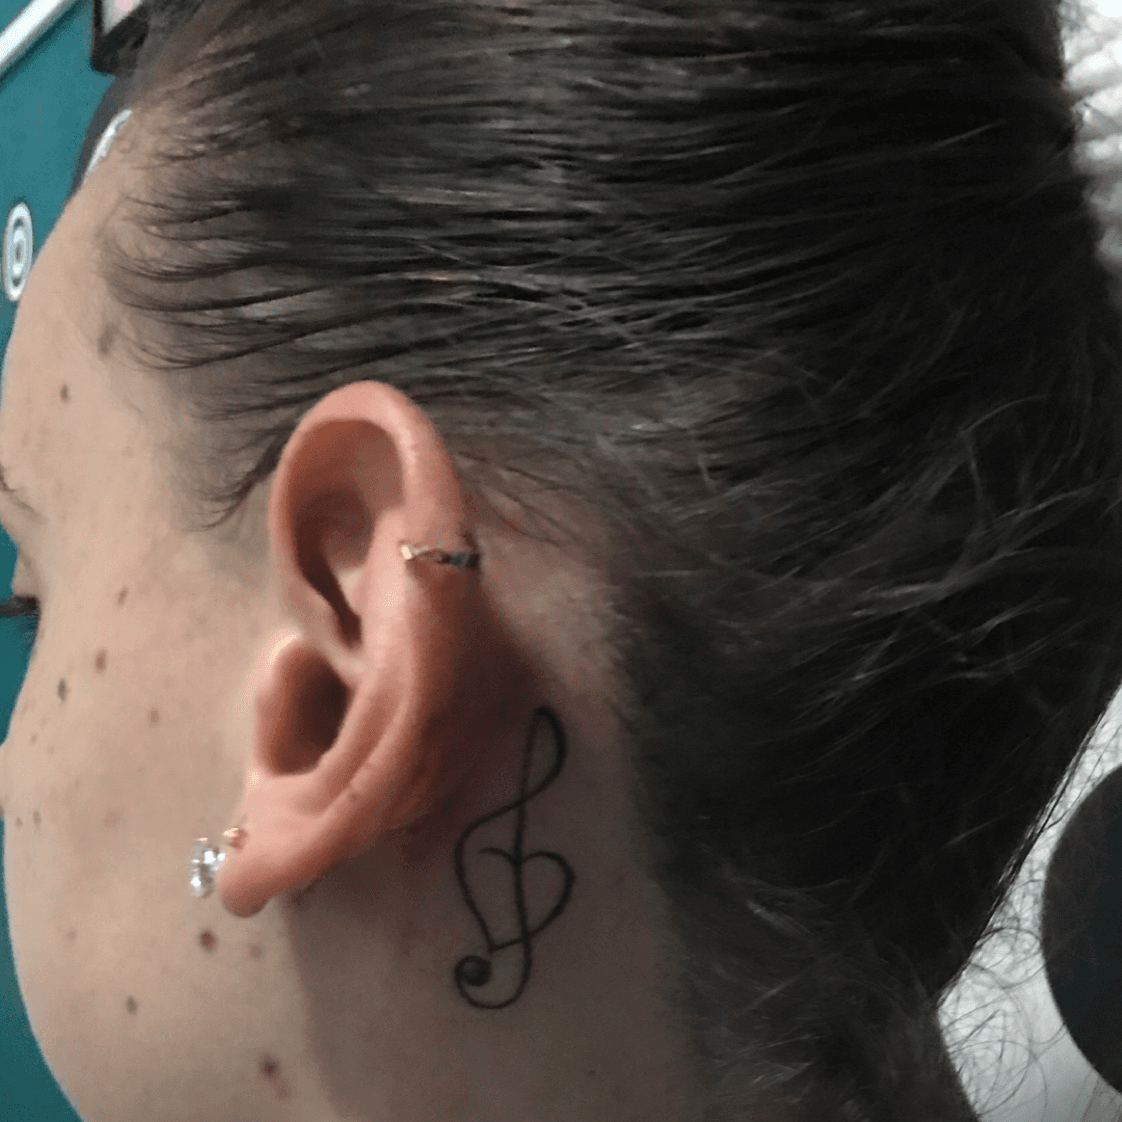 sergio ramos tattoo behind ear